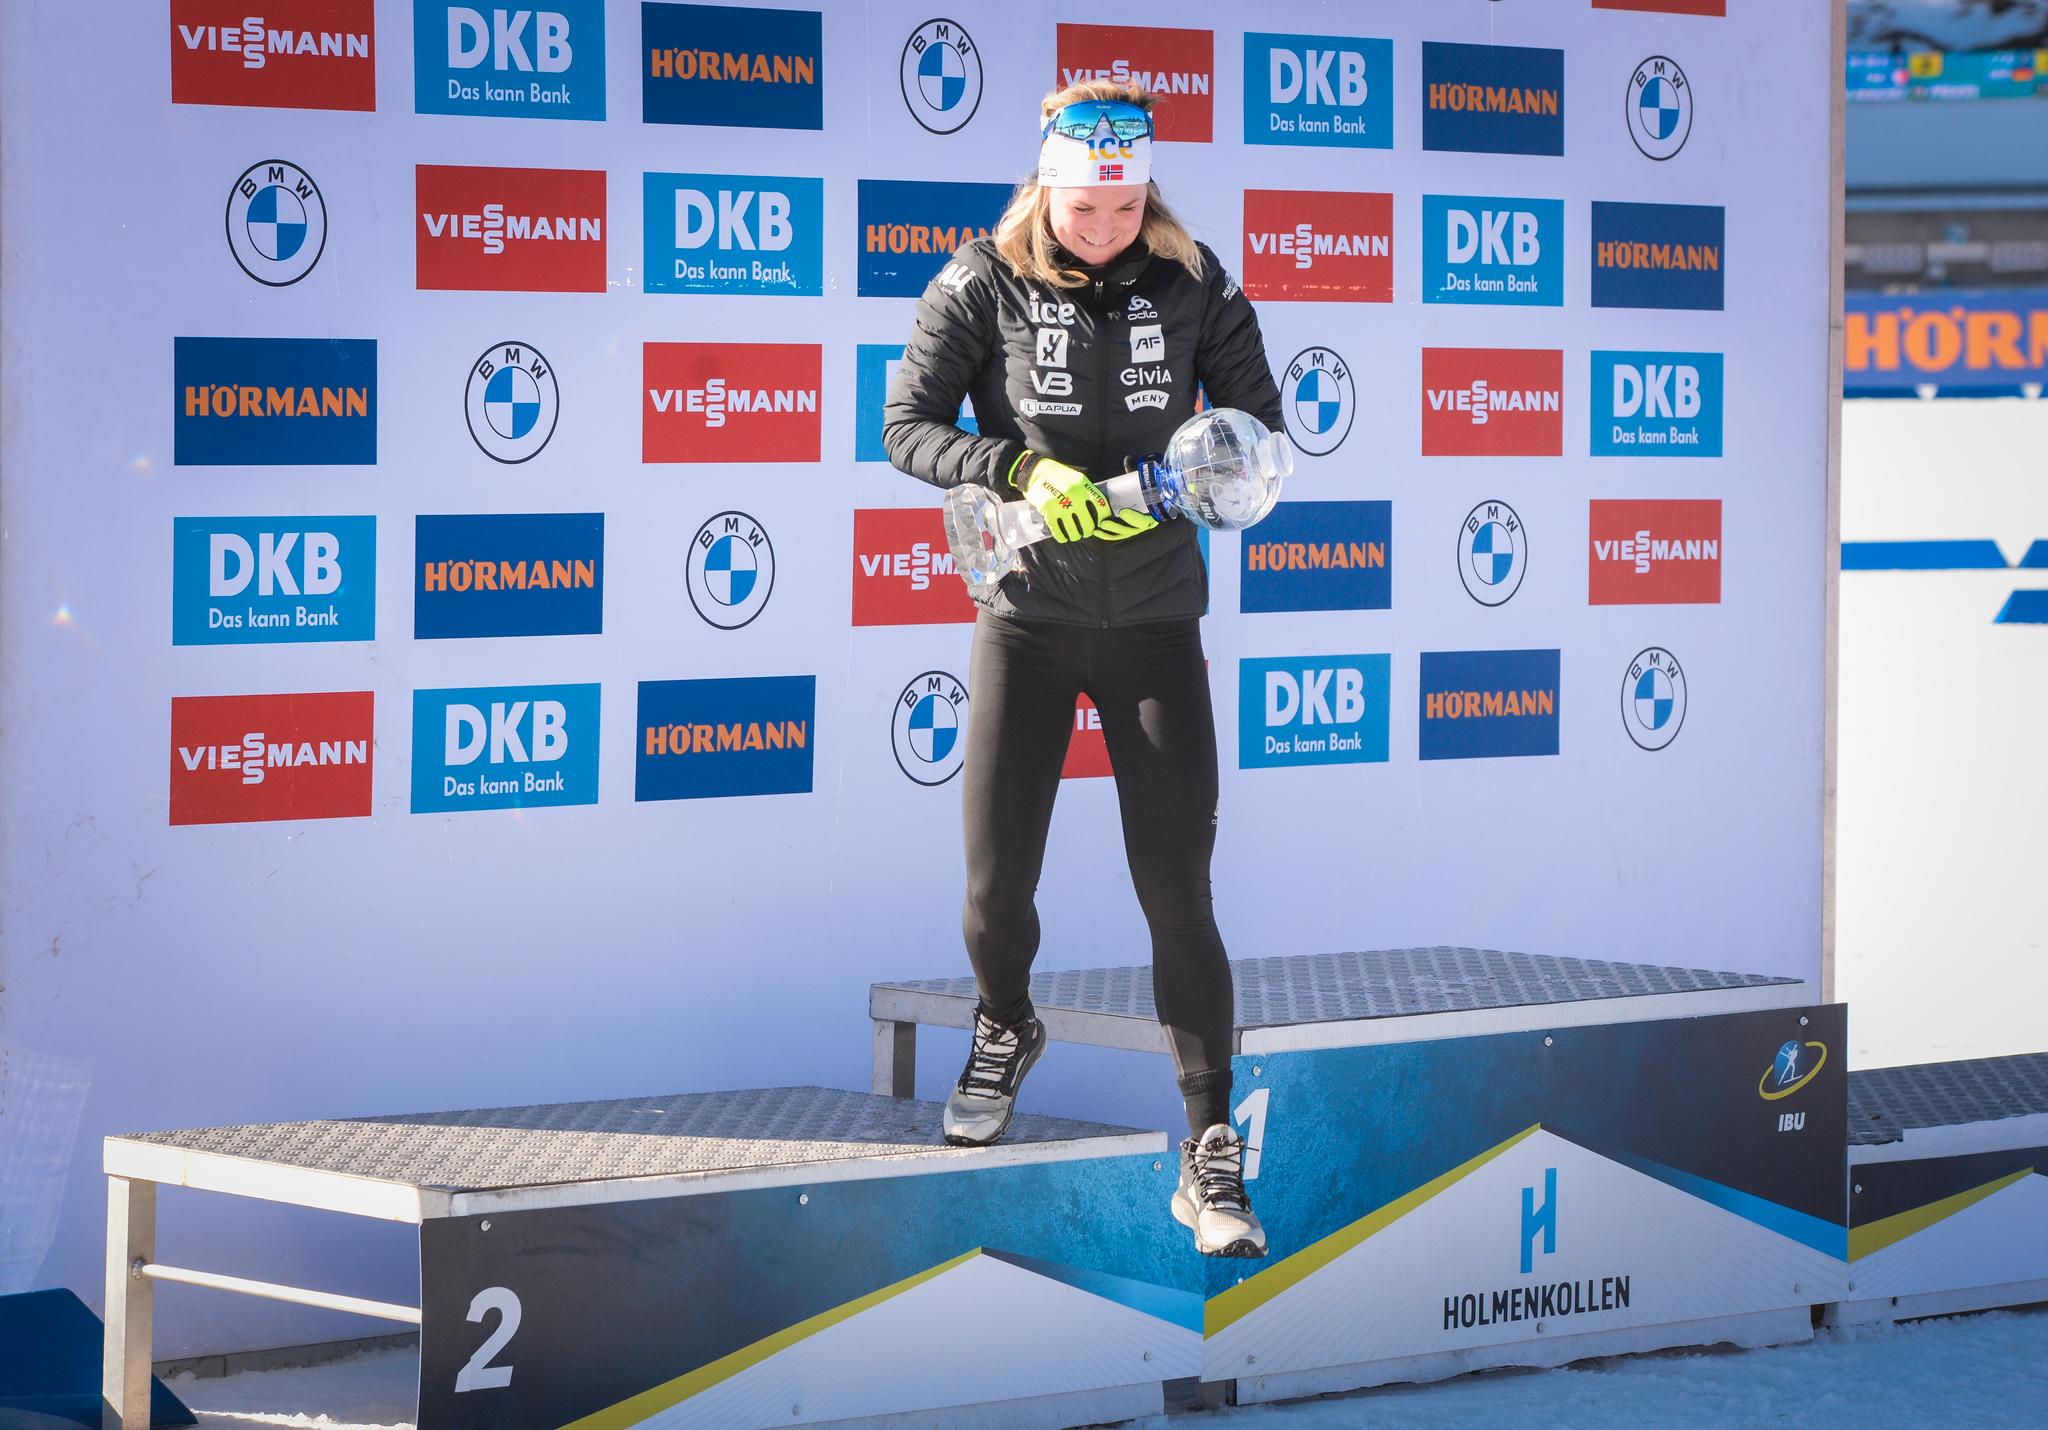 BEST I VERDEN: Marte Olsbu Røiseland på vei ned fra podiet i Holmenkollen etter å ha mottatt det store trofeet for sammenlagtseieren i verdenscupen.